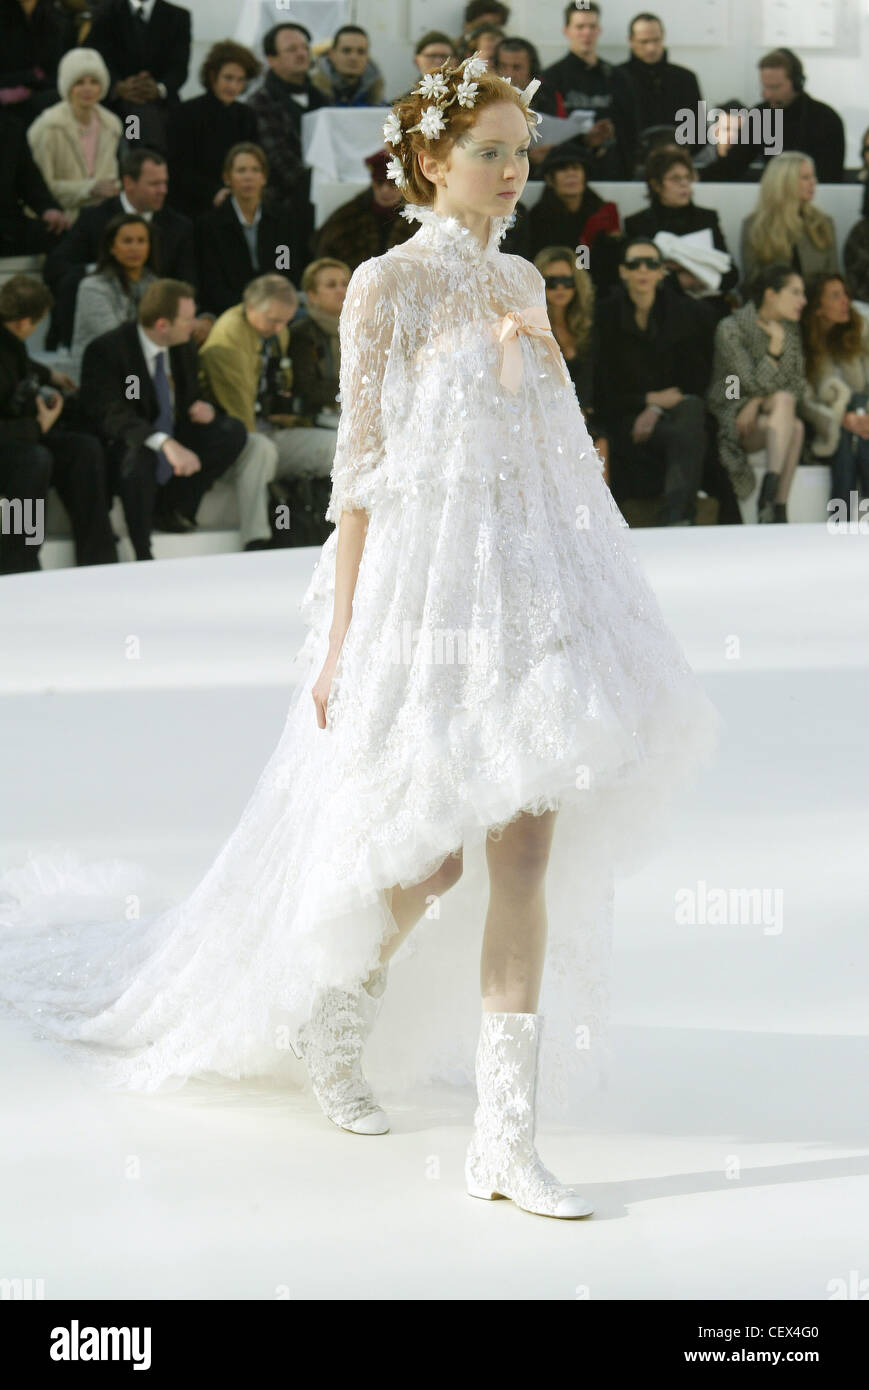 Chanel Haute Couture Printemps Été Paris modèle britannique Lily Cole  porter une robe trapèze dentelle blanche former plusieurs pieds flottants  Photo Stock - Alamy